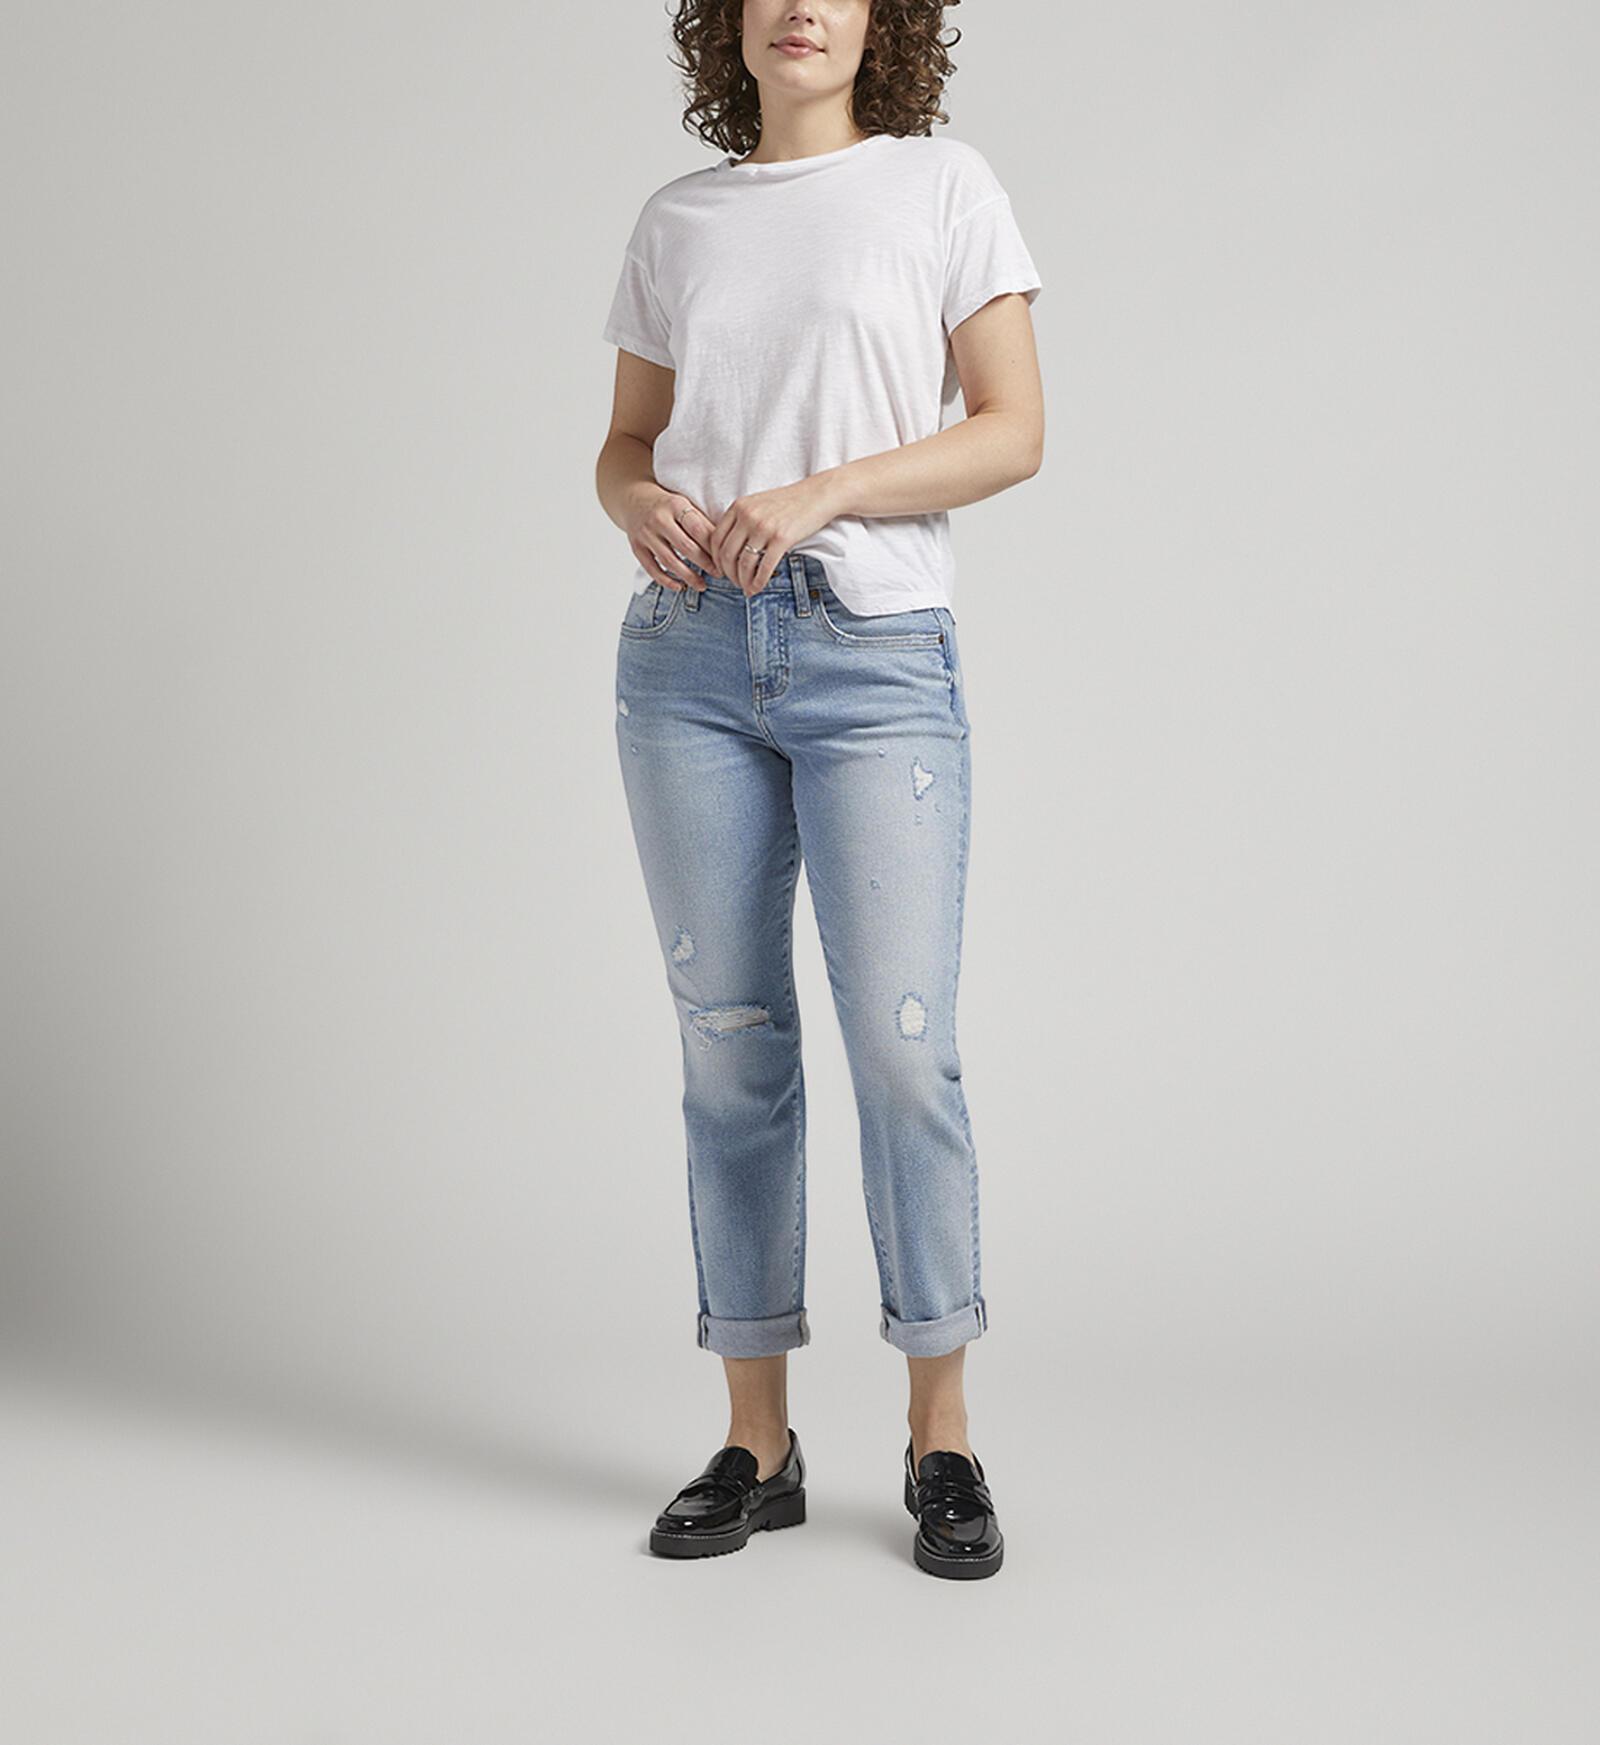 Shop Women's Girlfriend Jeans in Canada